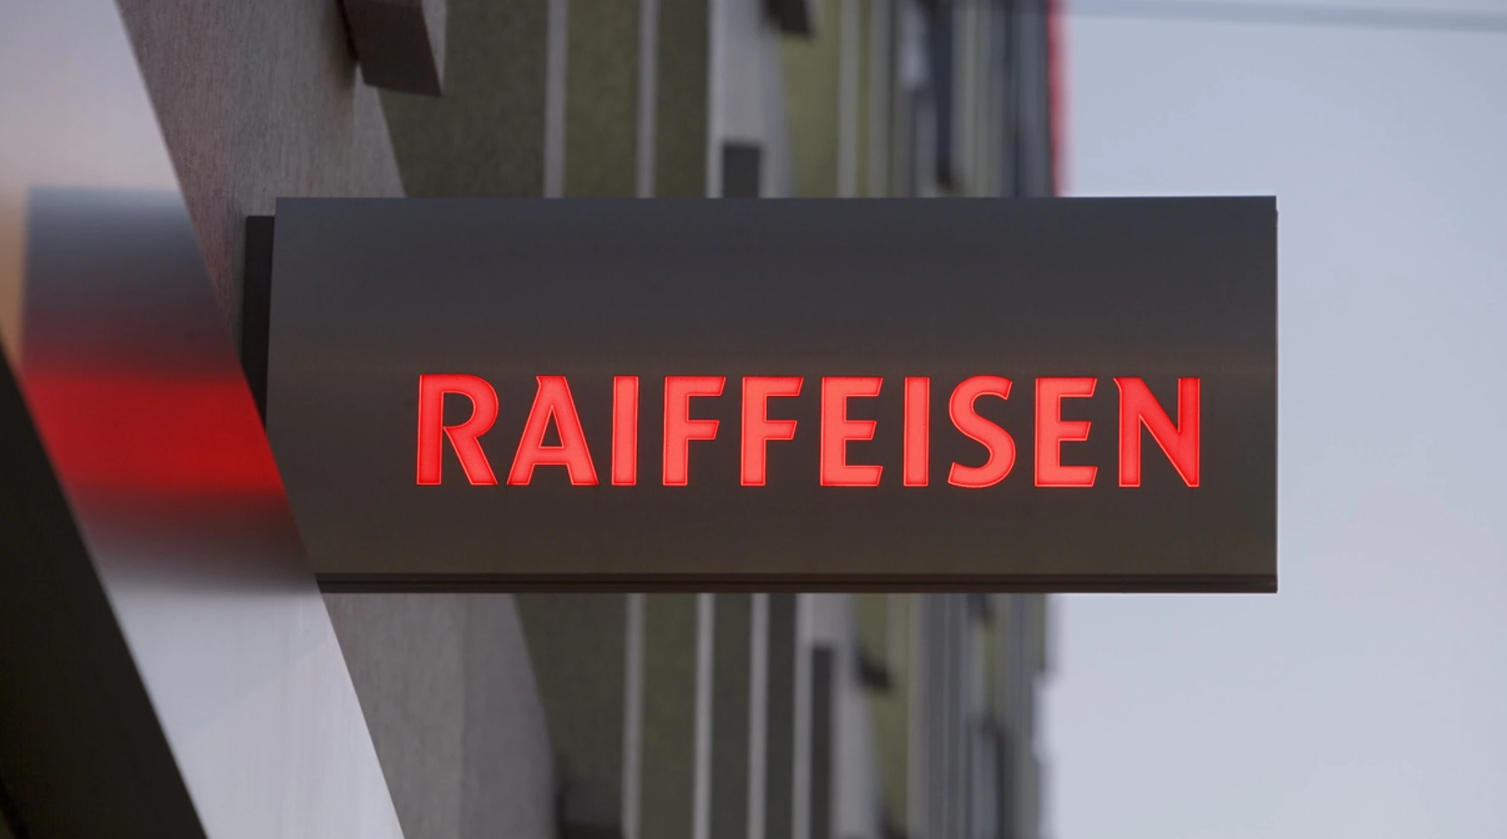 Lost bank. Raiffeisen банк Швейцарии. Swiss Raiffeisen Group. Raiffeisen Швейцария банк логотип. Raiffeisen Bank закрыл корсчета всем банкам из России, кроме своей "Дочки".